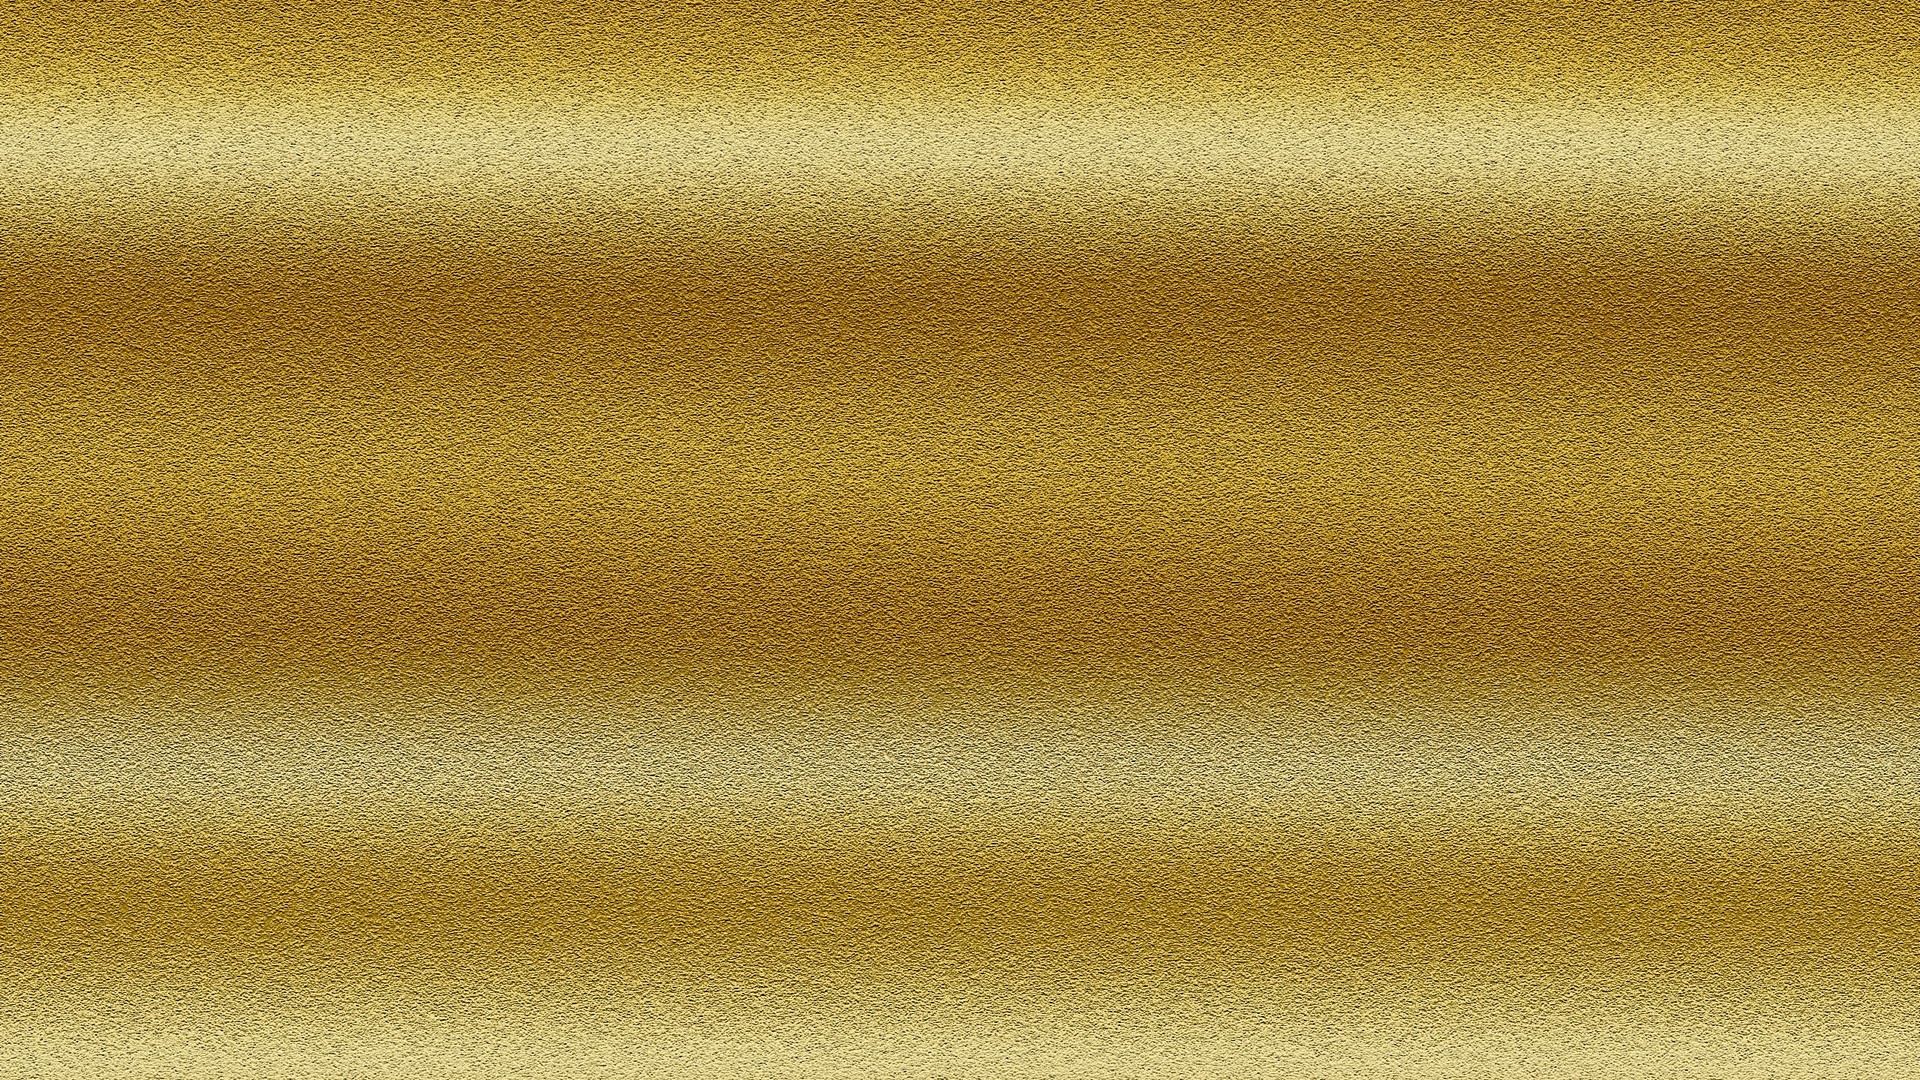 Plain Gold Desktop Wallpaper 1920x1080